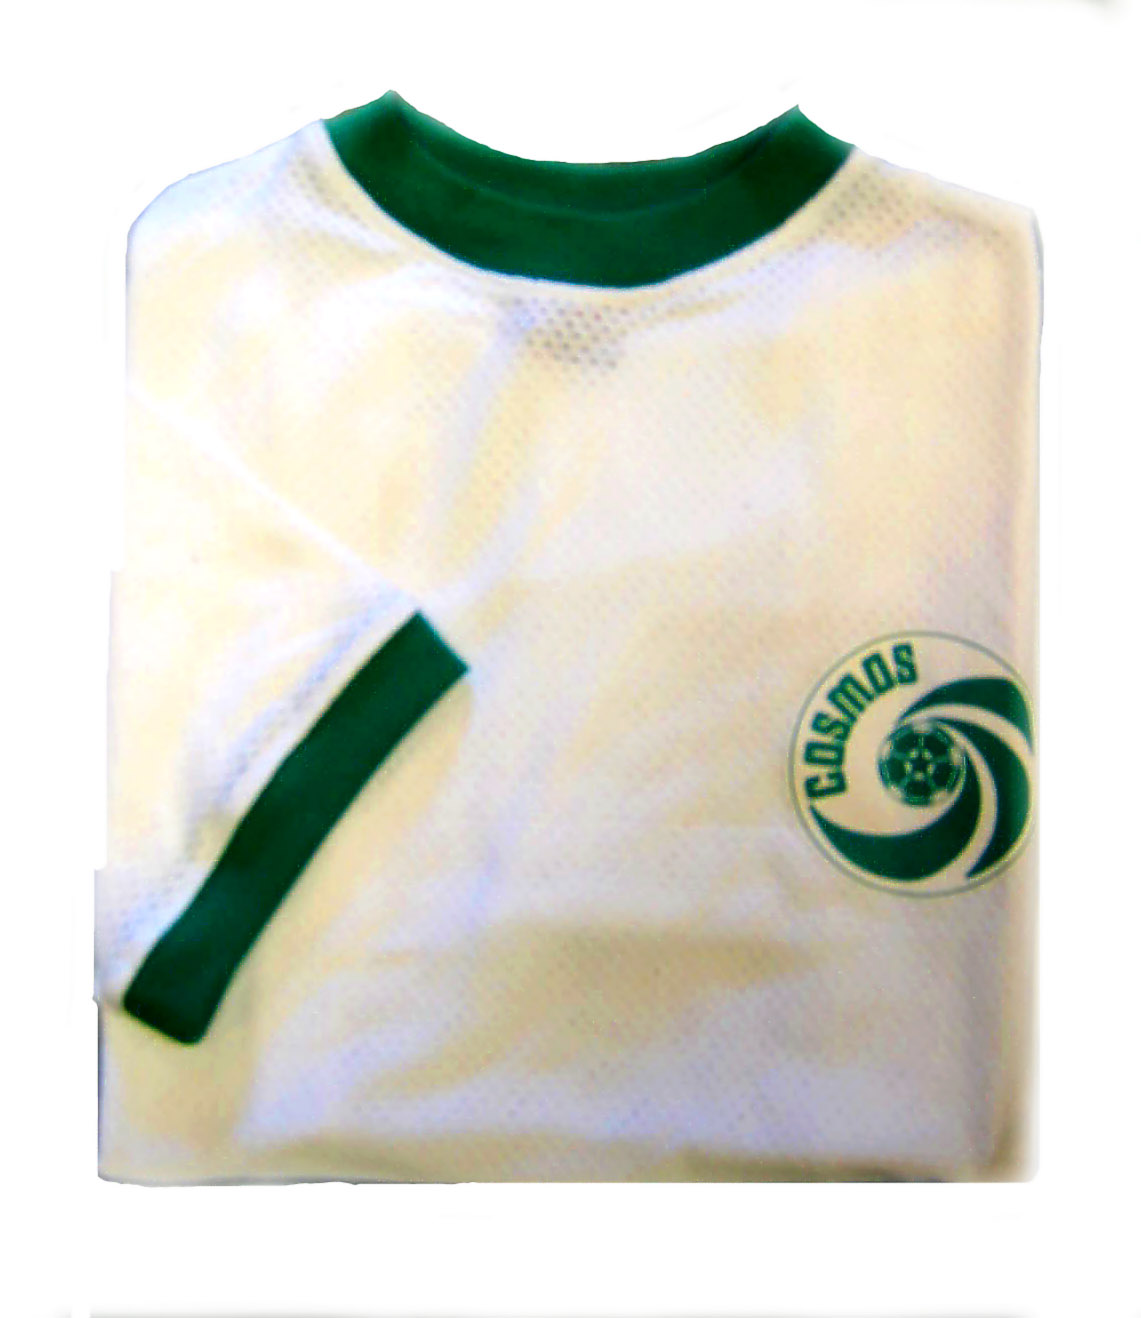 TOFFS Cosmos mesh 1980s. Retro Football Shirts